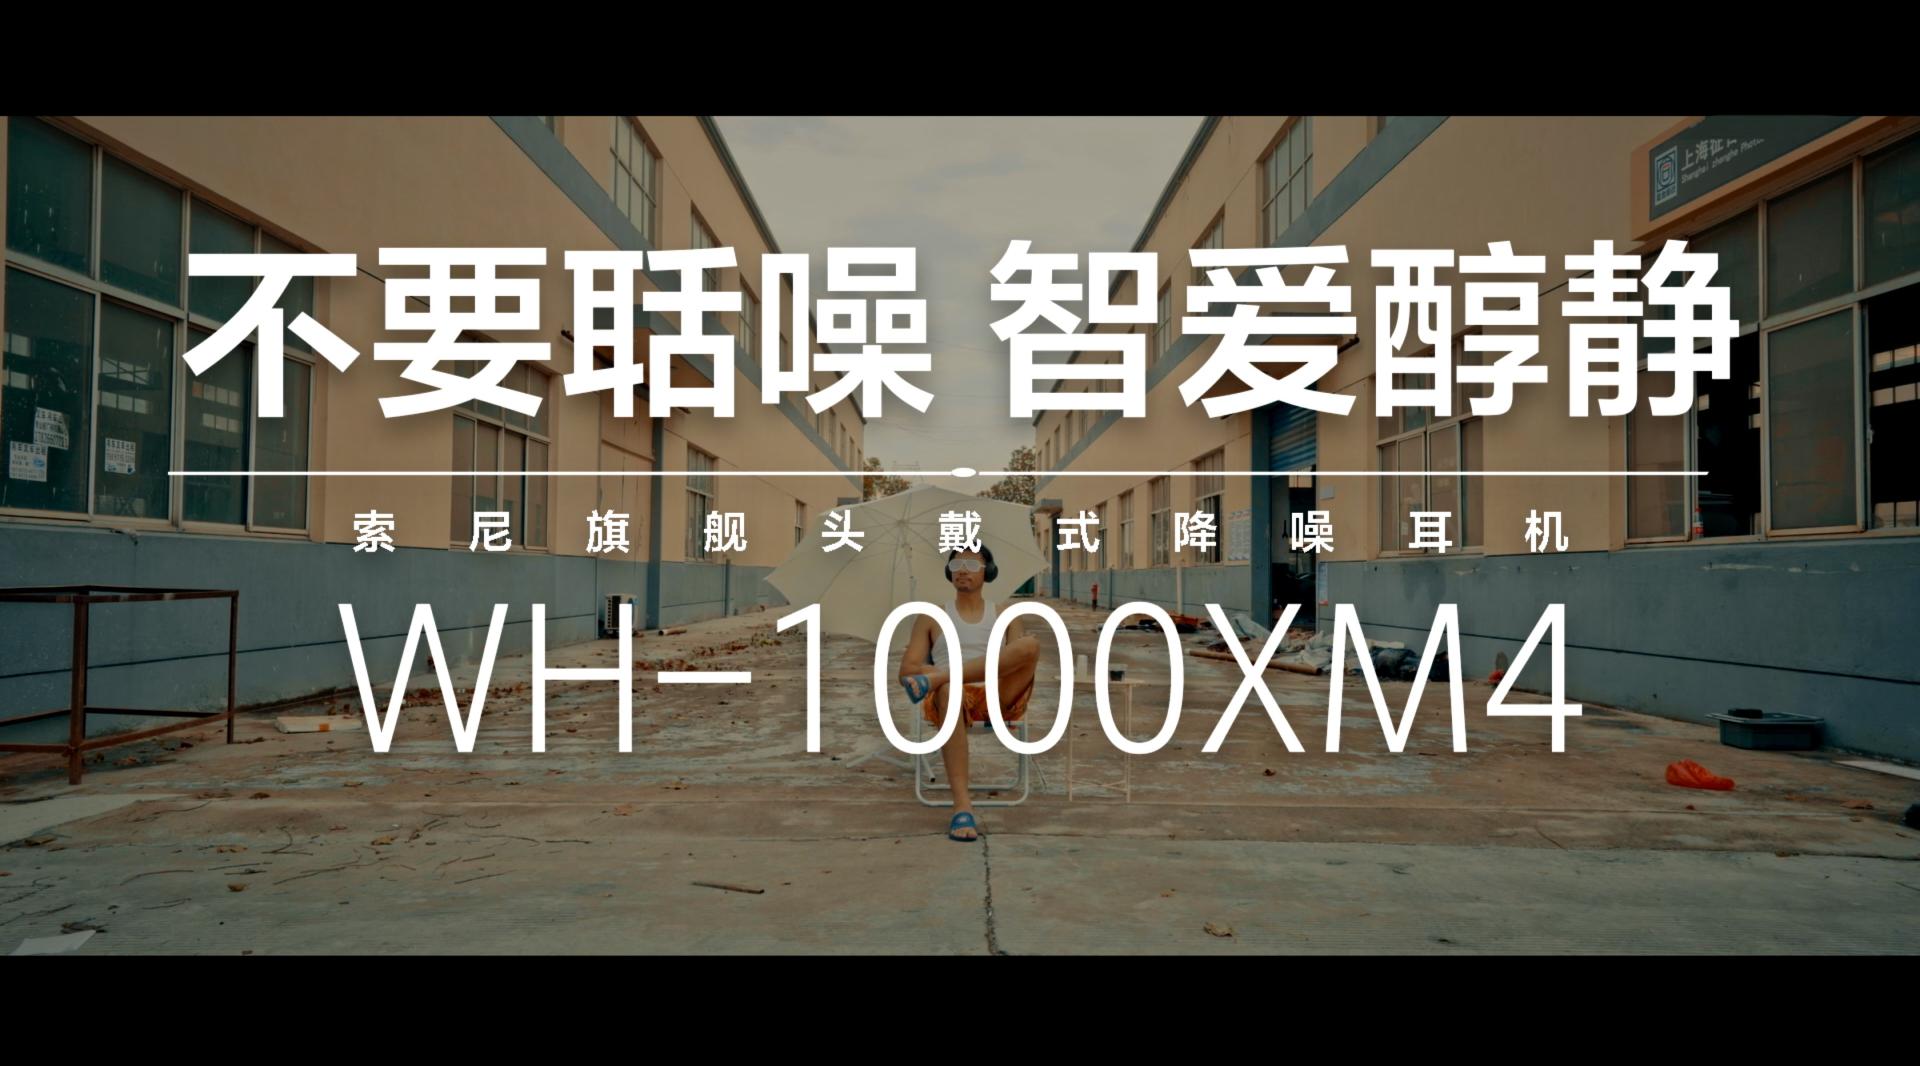 智爱醇静 索尼WH1000XM4系列广告